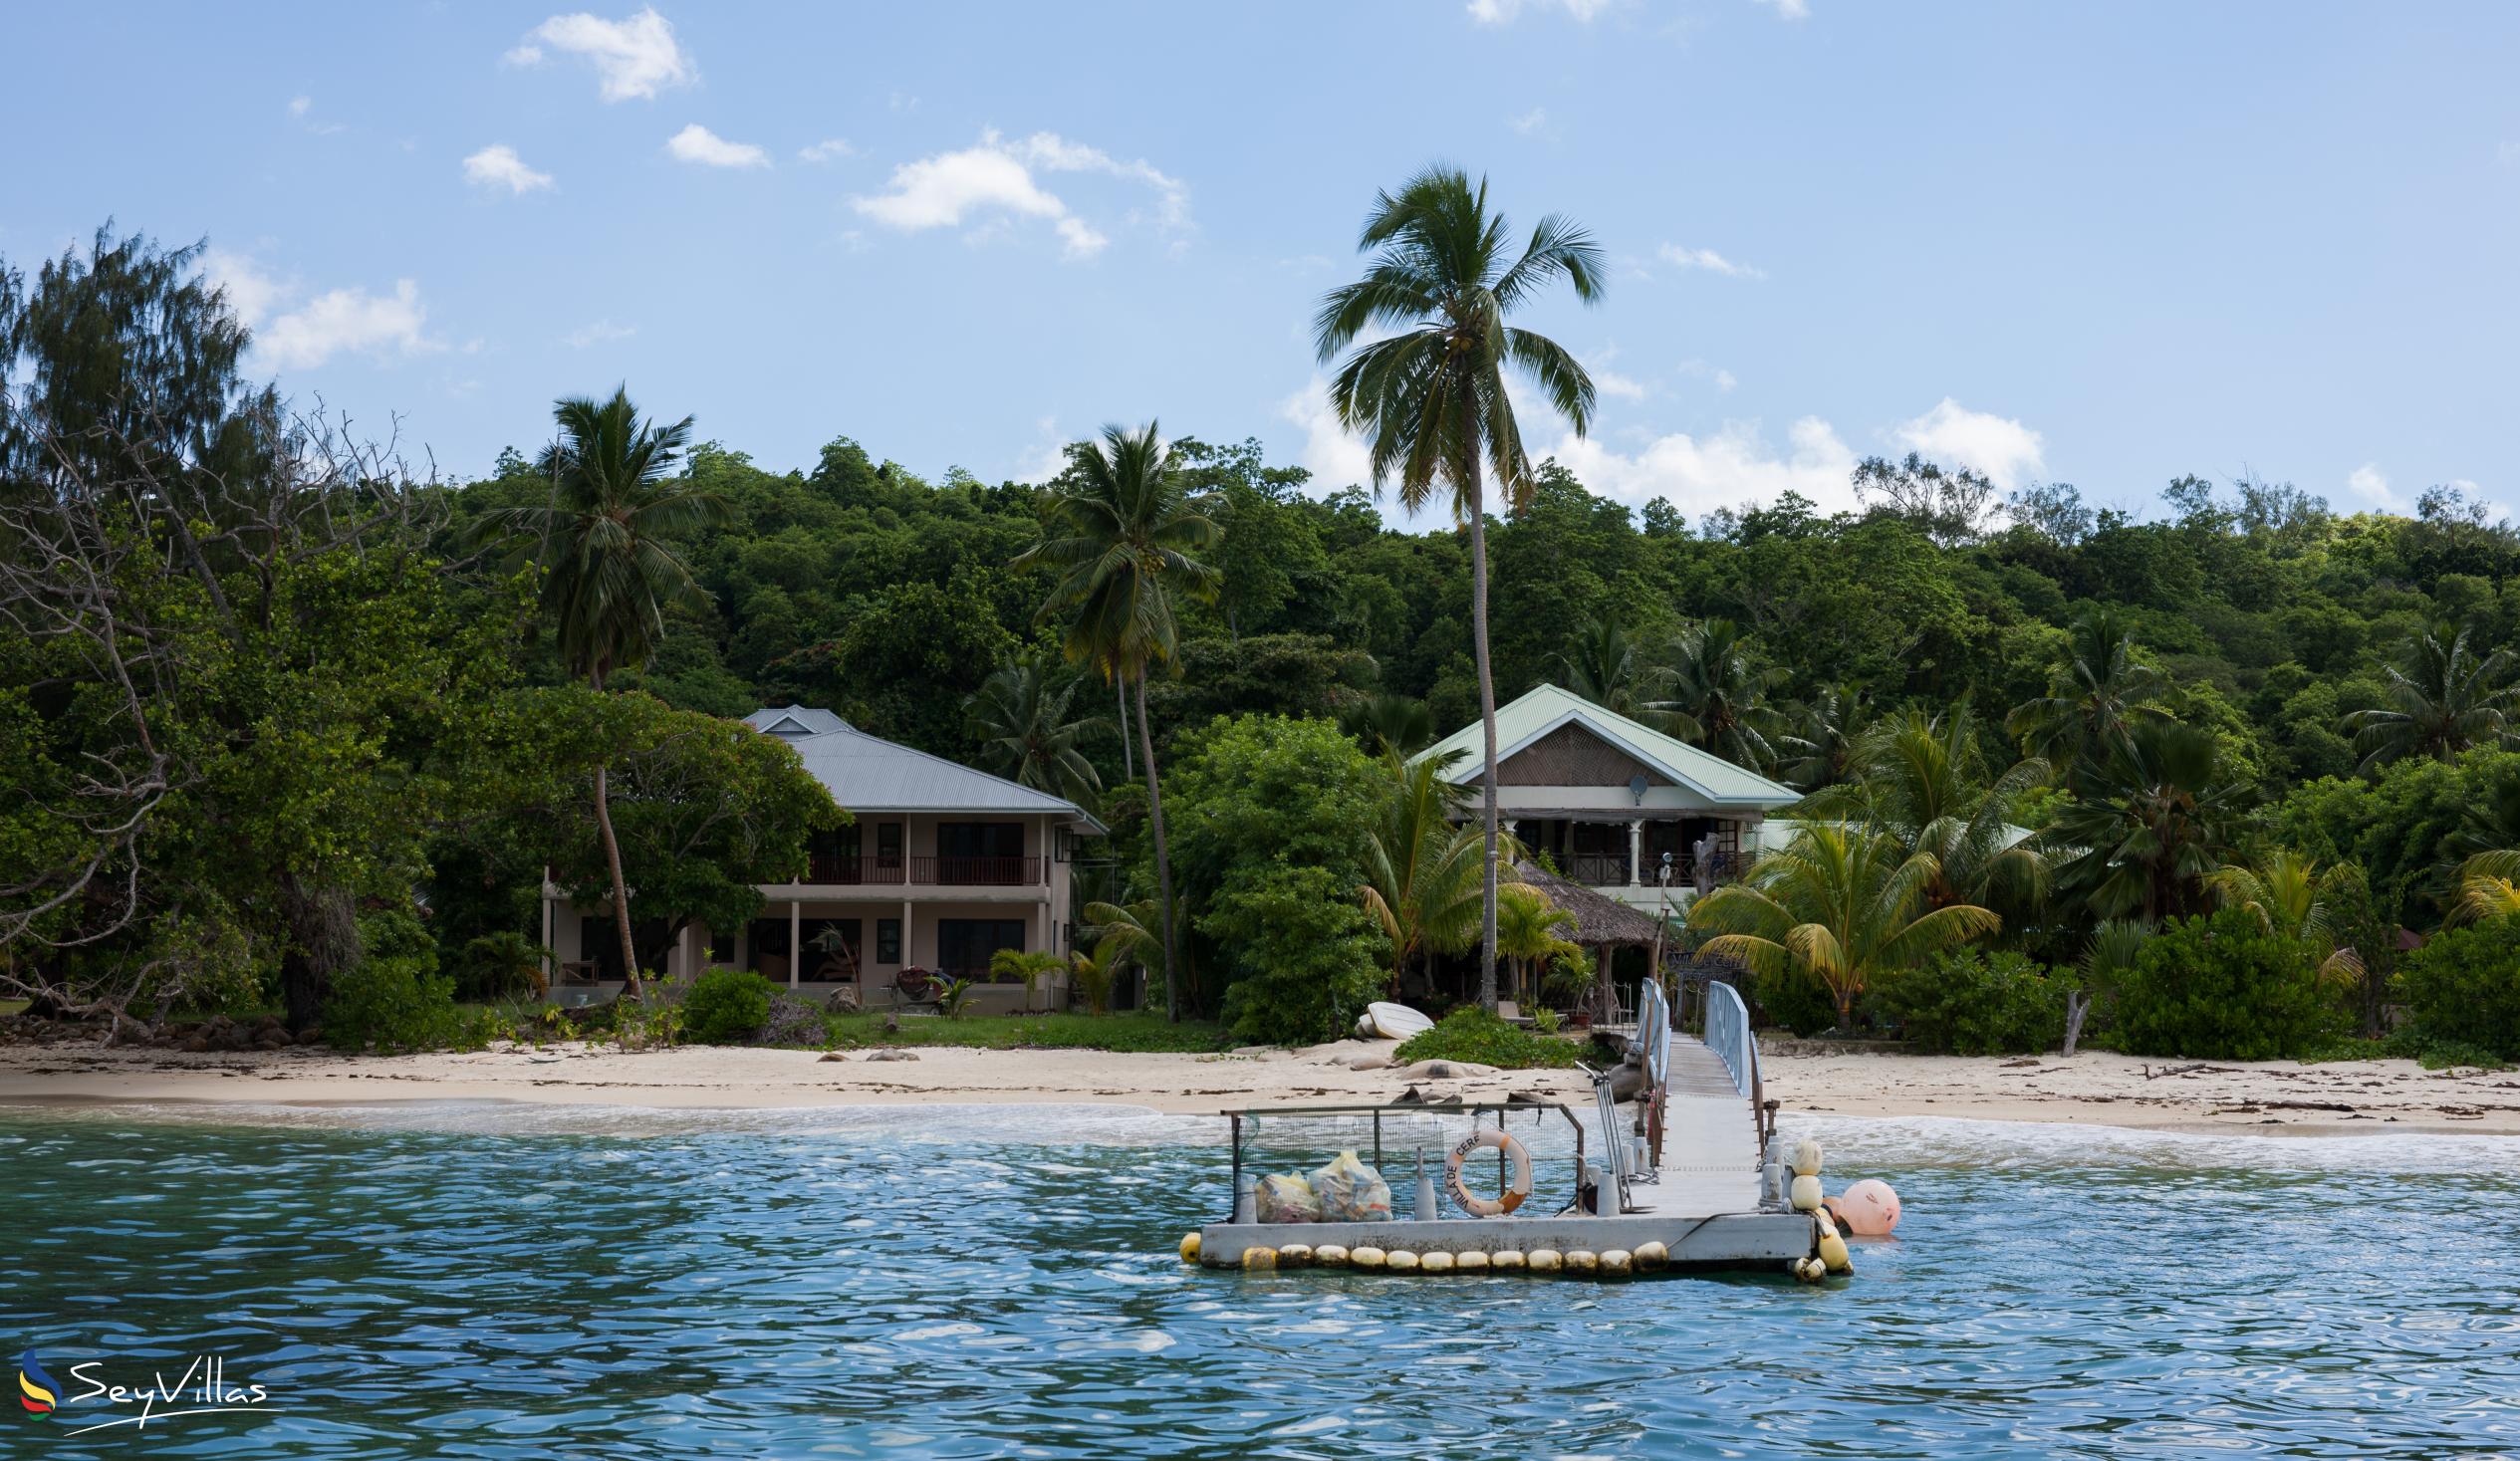 Foto 46: Villa de Cerf - Extérieur - Cerf Island (Seychelles)